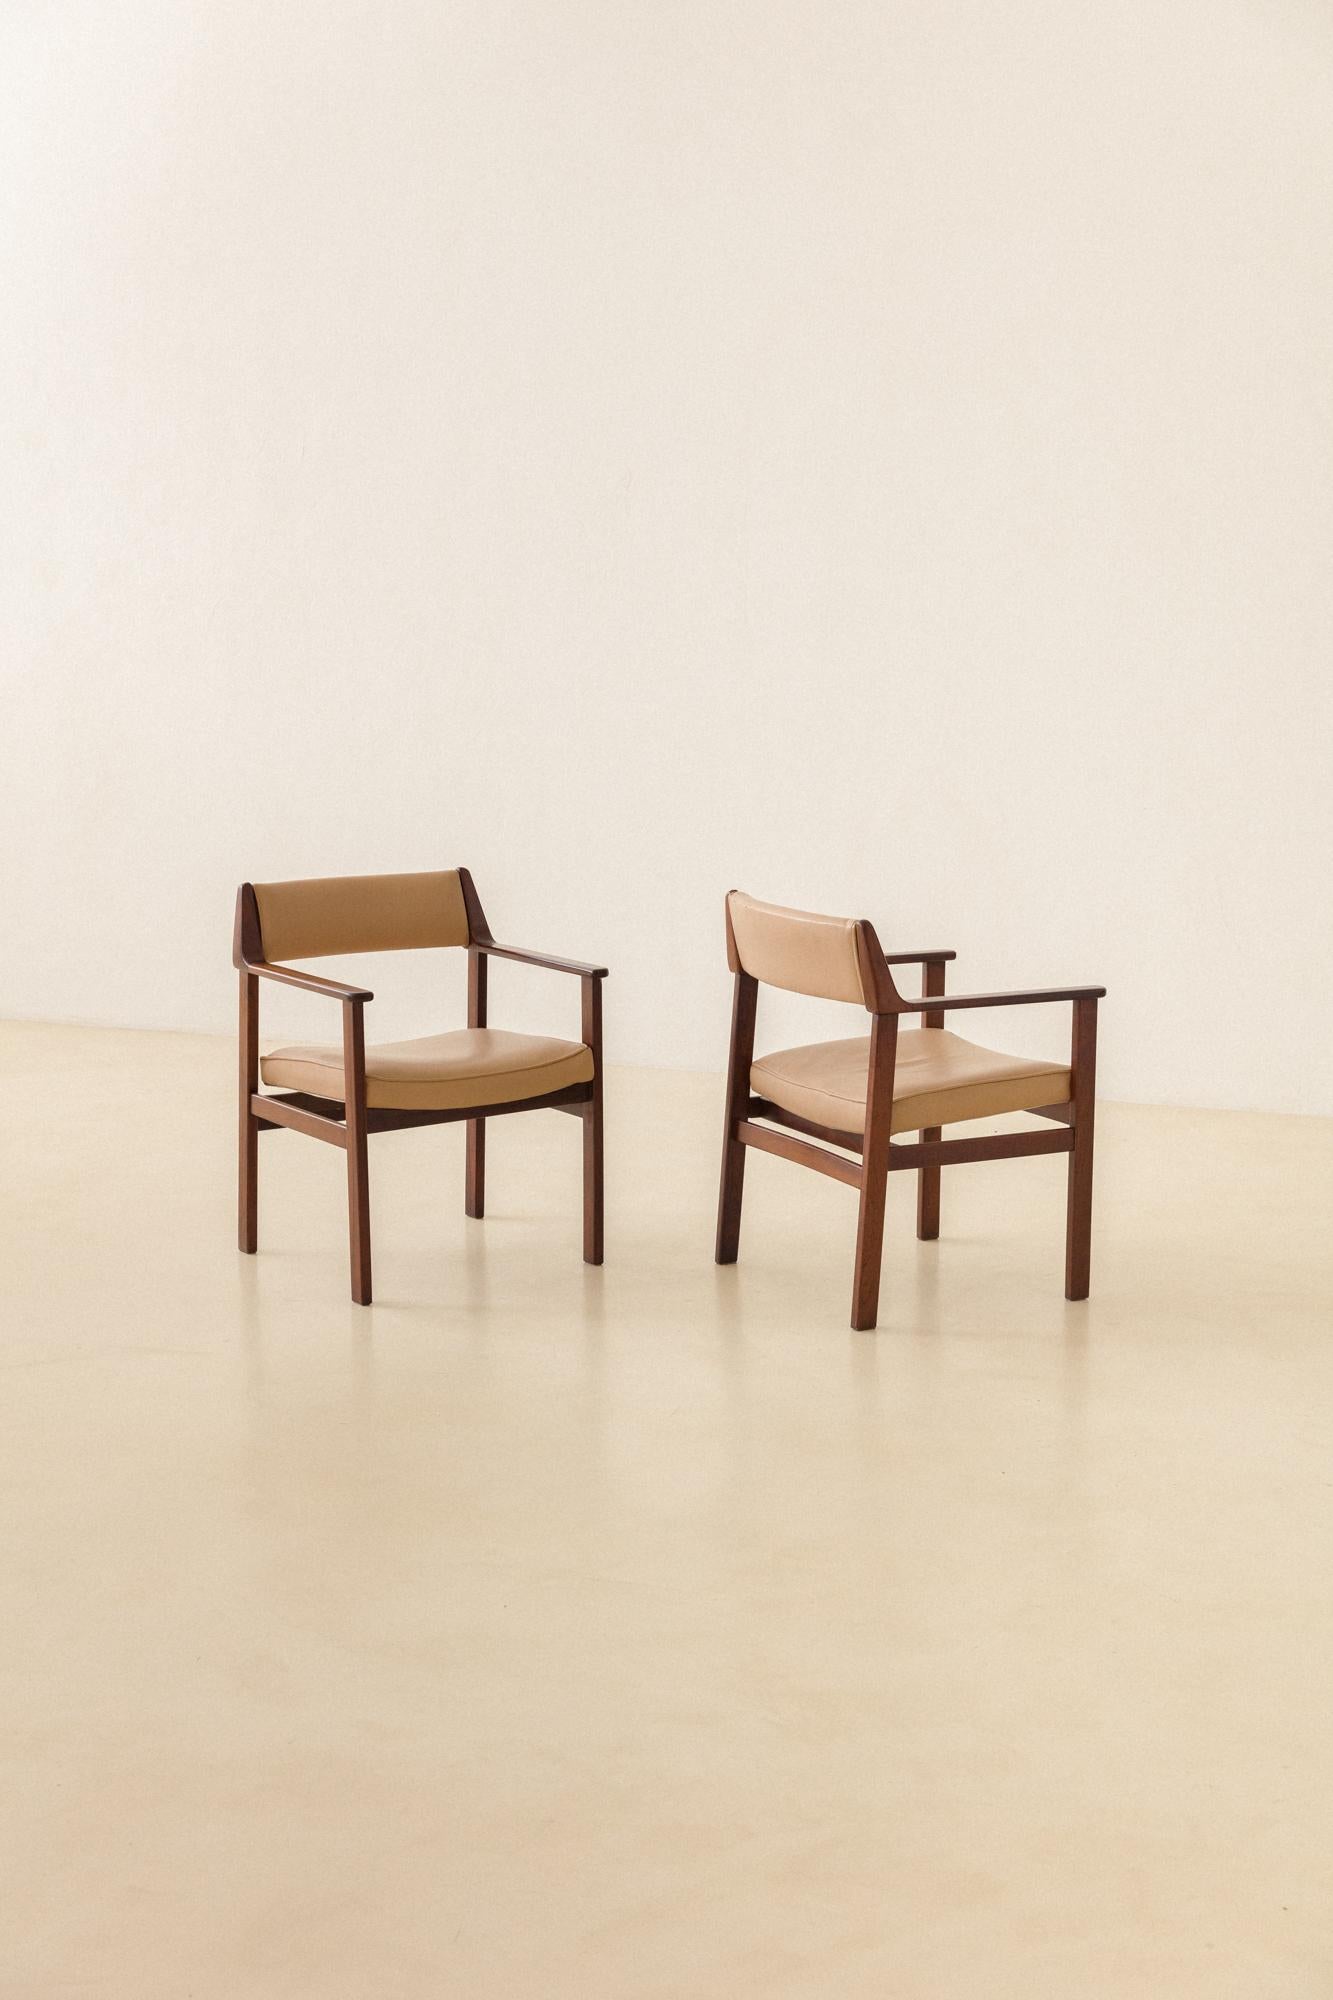 Dieses Paar wunderschöner Stühle mit Armlehnen besteht aus massivem Palisanderholz und Leder und wurde in den 1960er Jahren von der brasilianischen Firma Casulo hergestellt. 

Die Stücke sind aus massivem brasilianischem Palisanderholz gefertigt